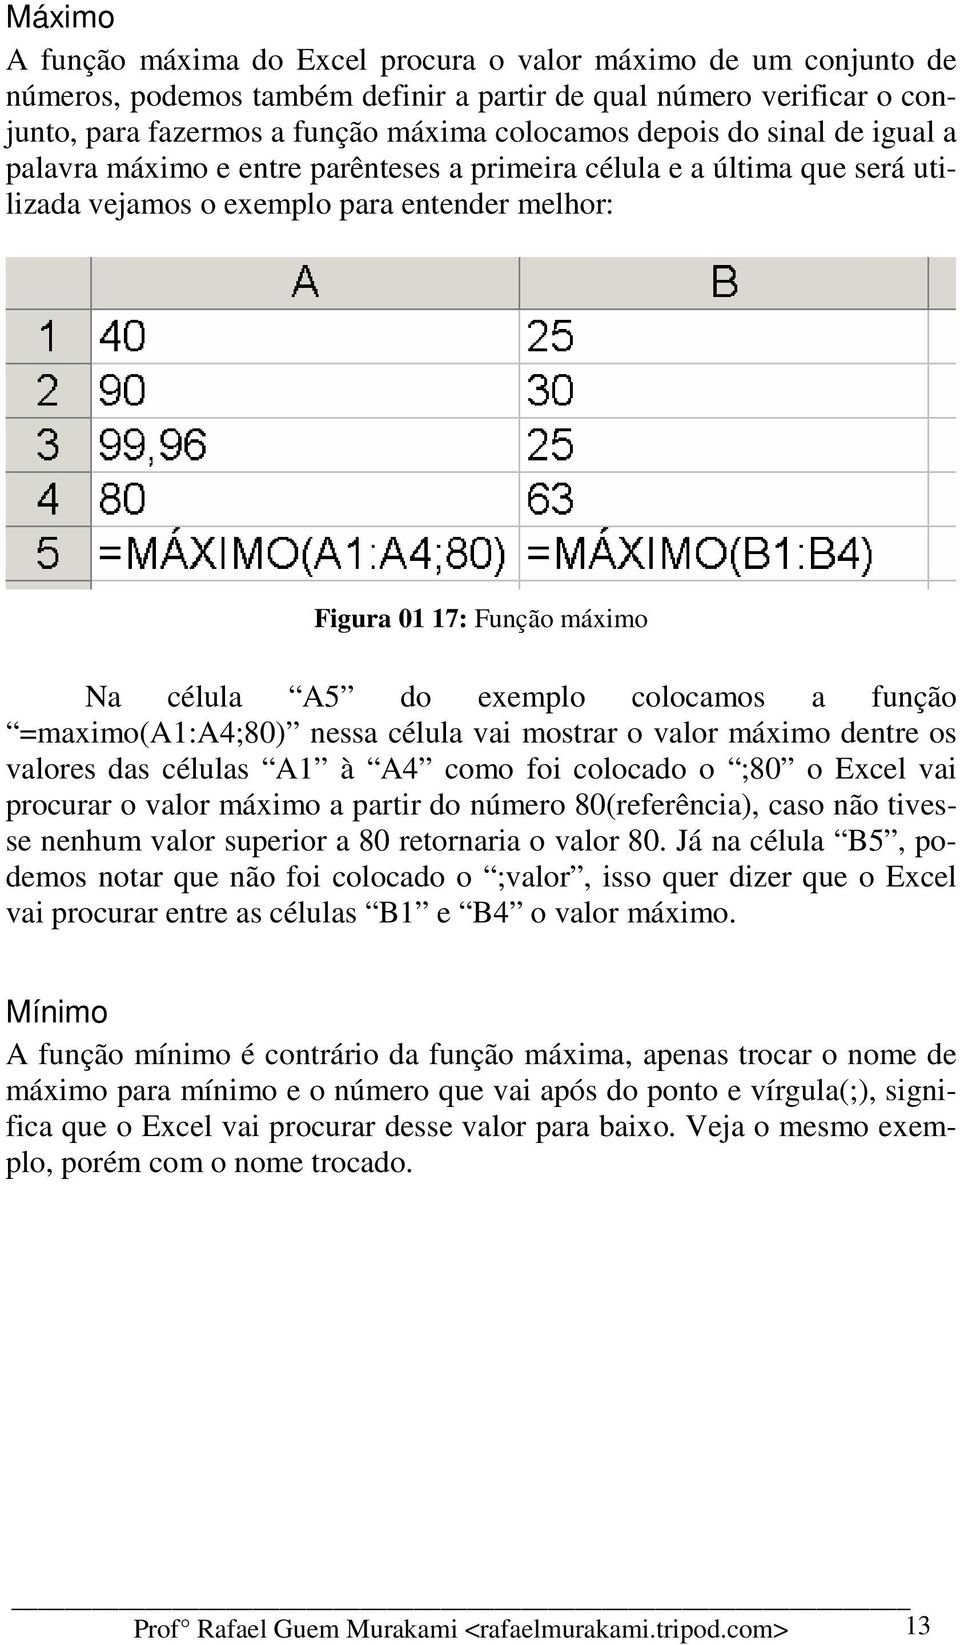 colocamos a função =maximo(a1:a4;80) nessa célula vai mostrar o valor máximo dentre os valores das células A1 à A4 como foi colocado o ;80 o Excel vai procurar o valor máximo a partir do número